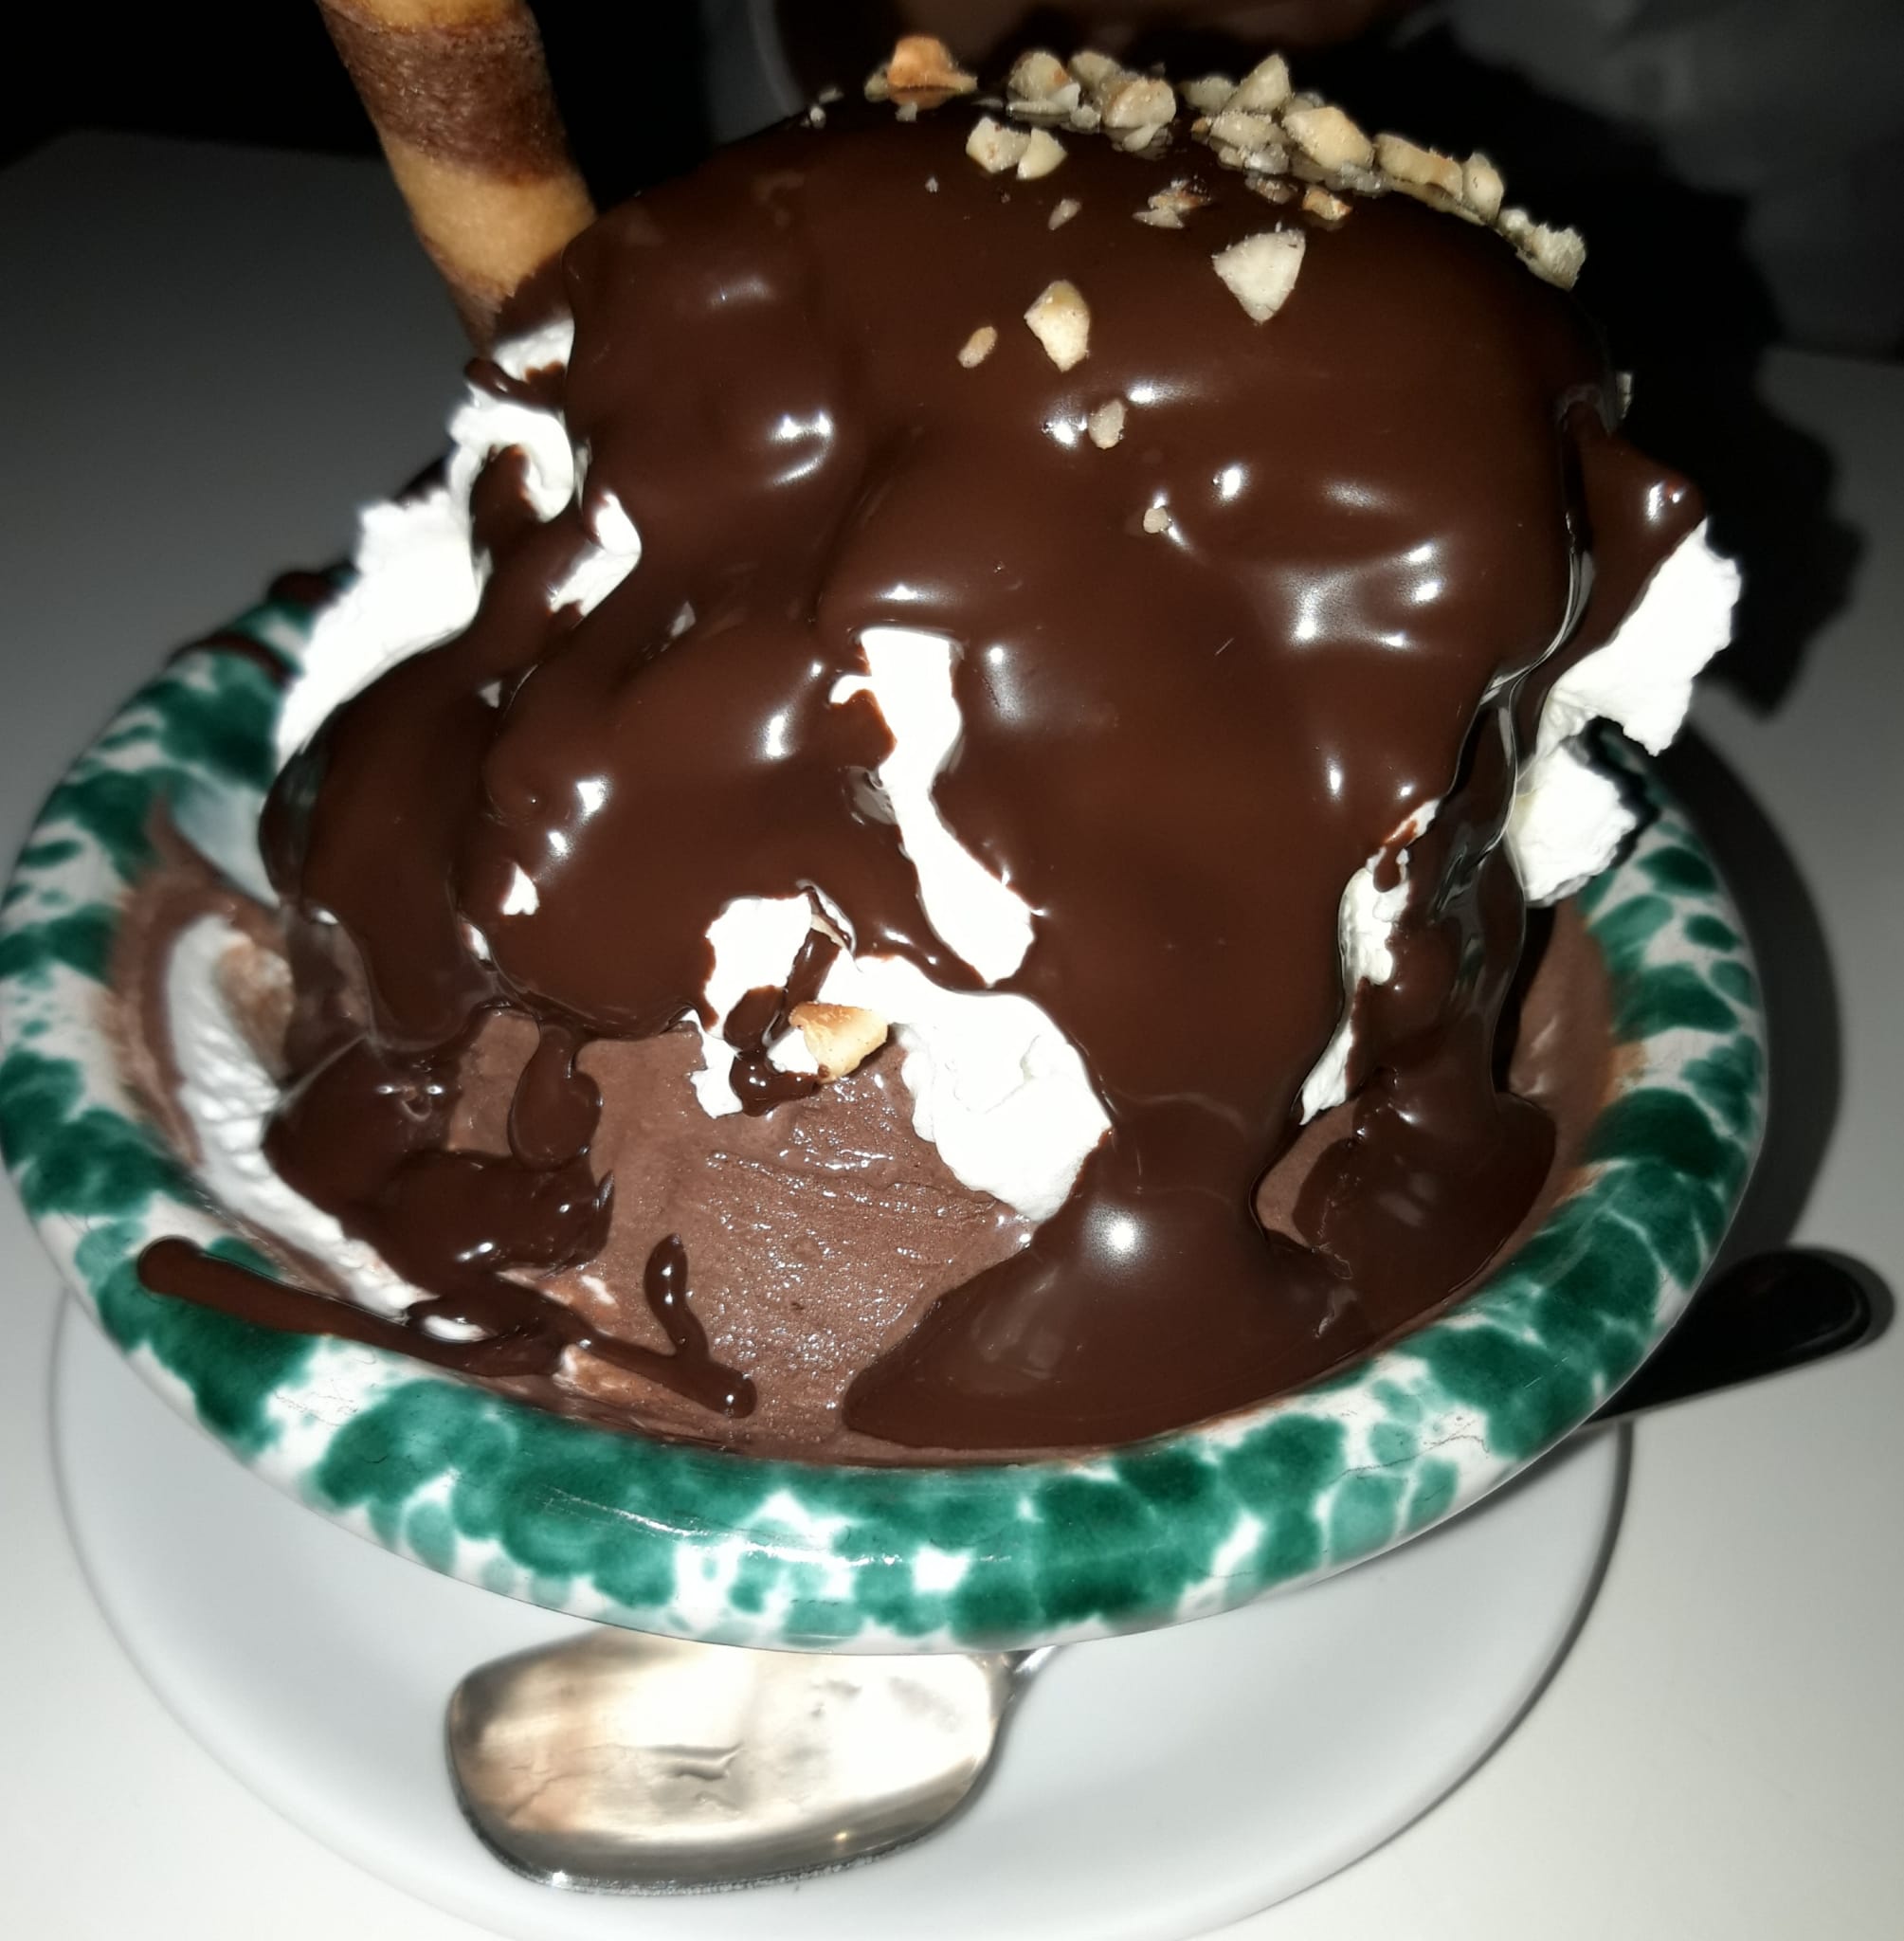 Caldo freddo, il dolce gelato tipico di San Vito Lo Capo